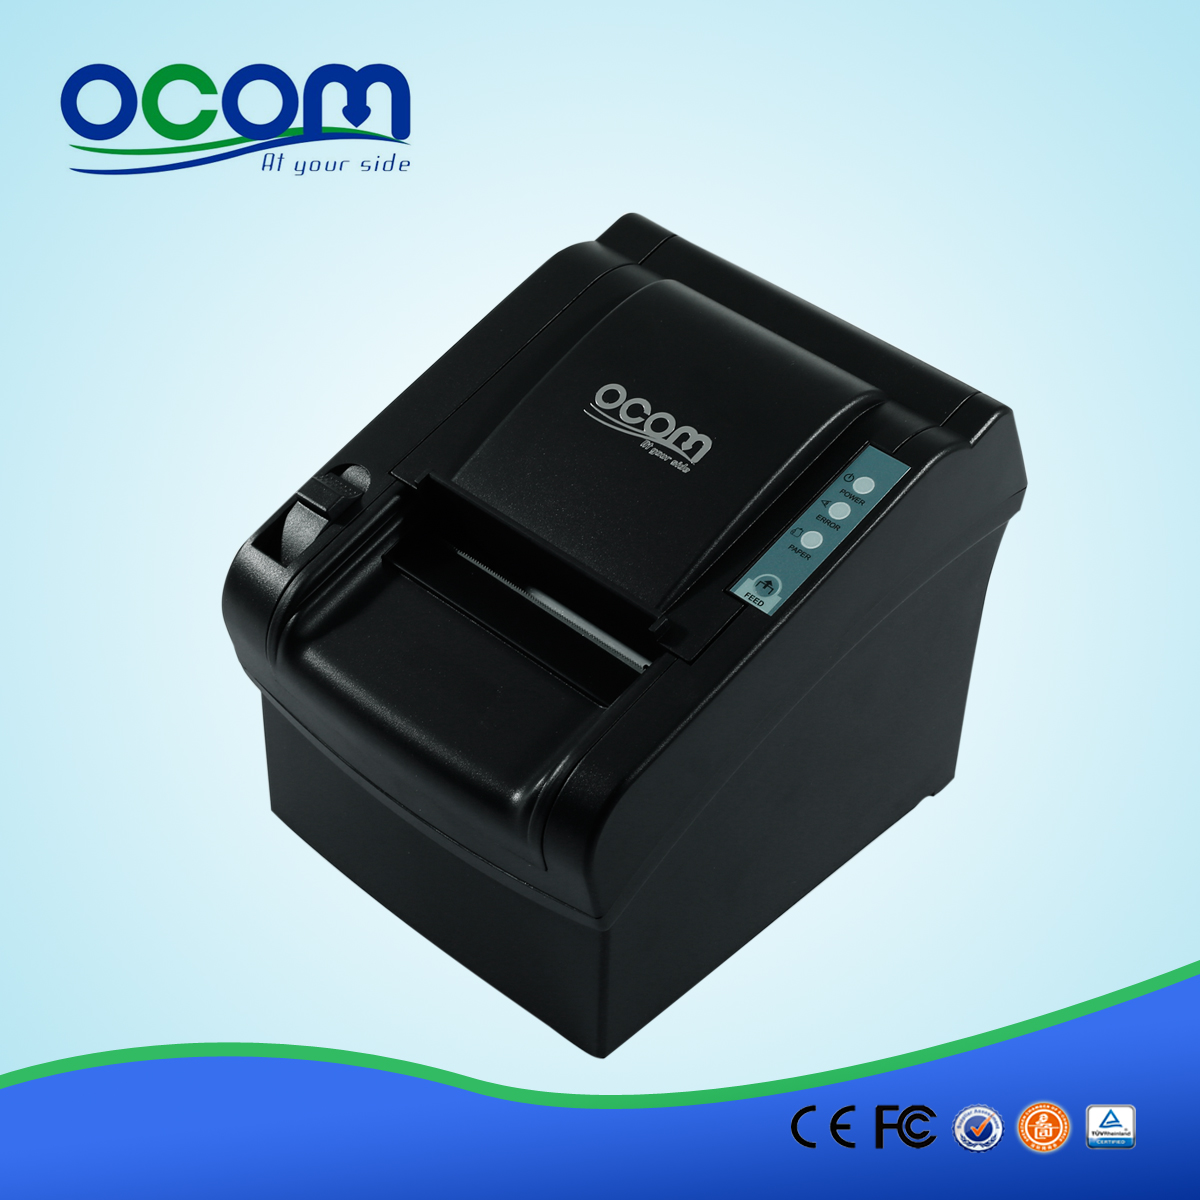 OCPP-802: on sale impressora pos recibo, preço impressora térmica direta térmica